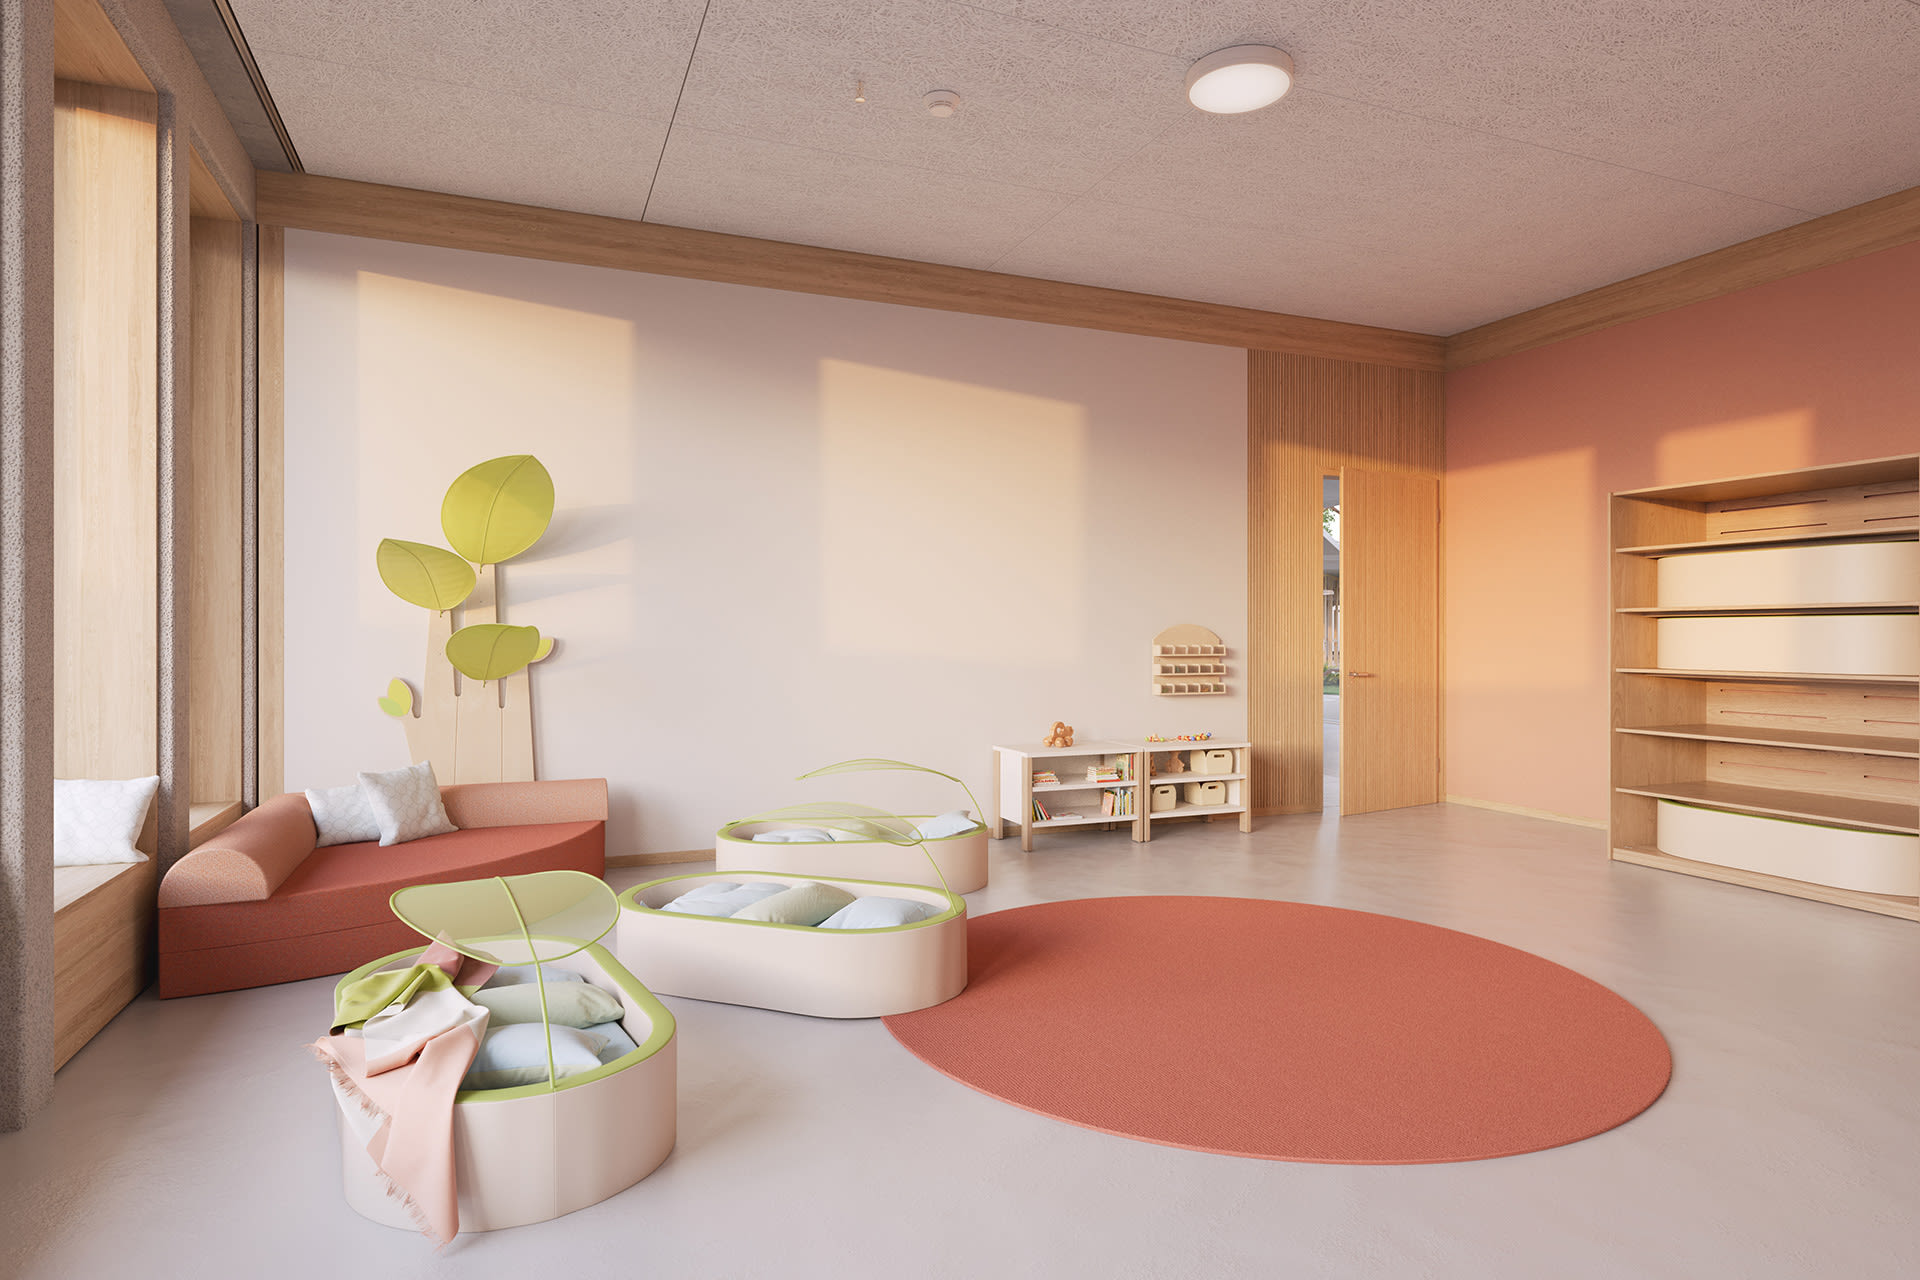 Farbgestaltung von Räumen |  Raum mit TERRA-farbener Wand und Rundteppich in der Mitte, darauf stehen Schlafkörbe für Babys und Sofa in der Ecke